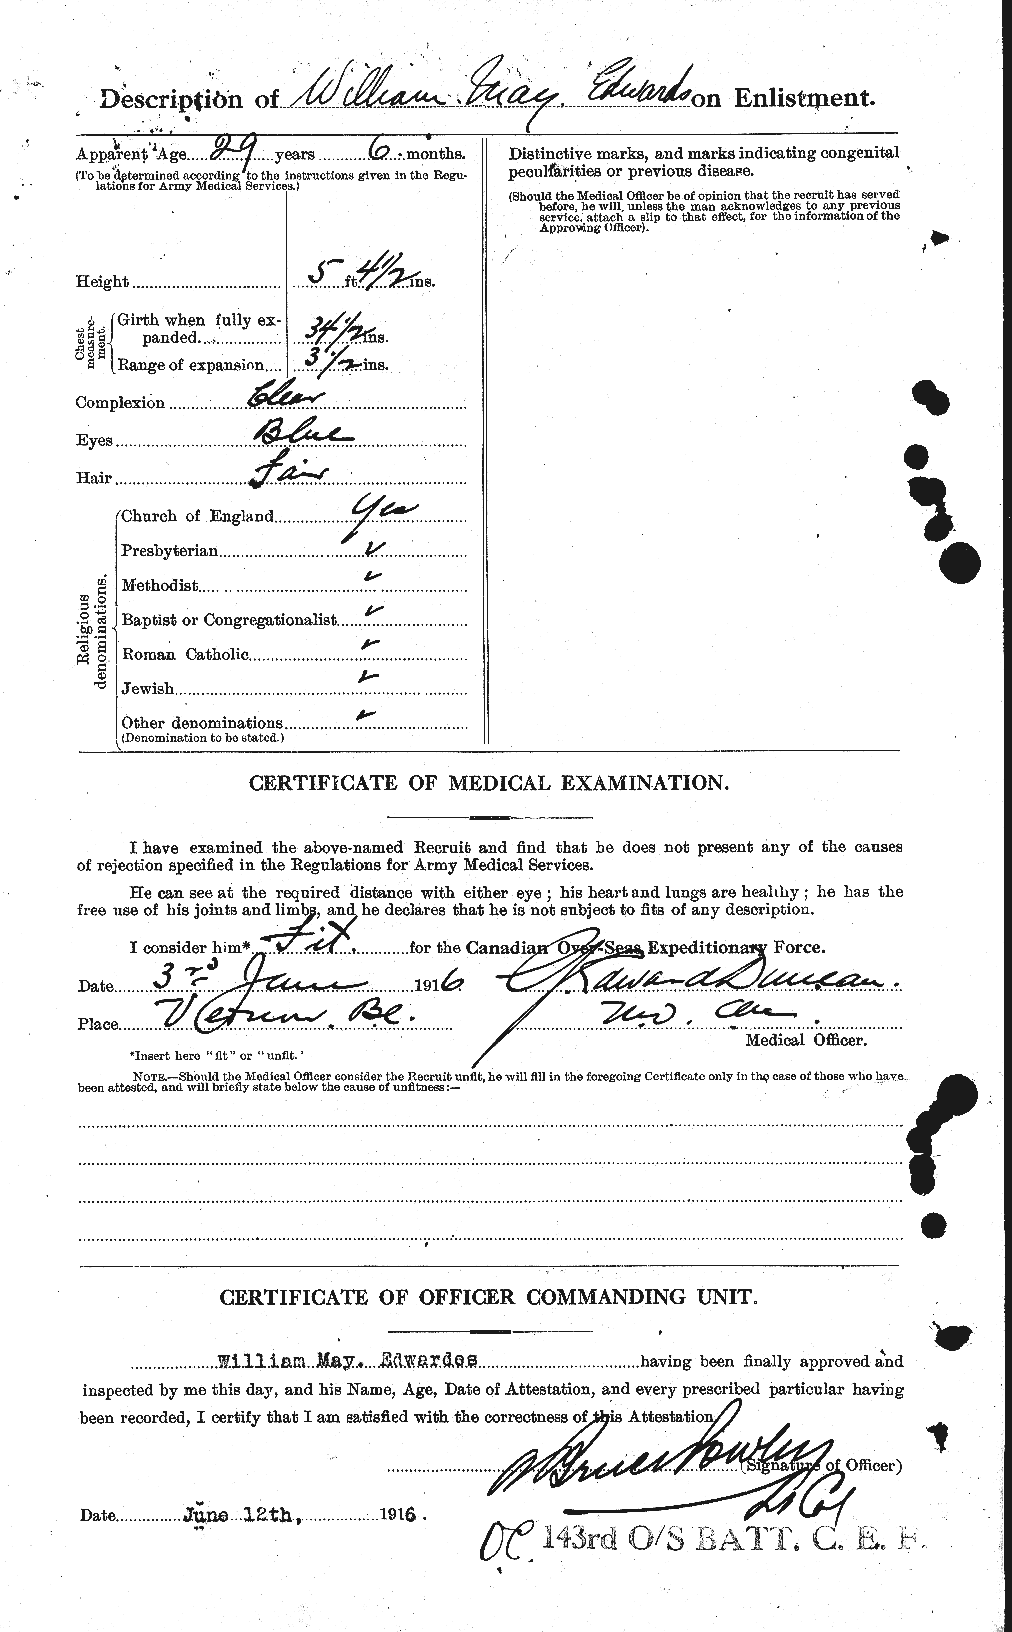 Dossiers du Personnel de la Première Guerre mondiale - CEC 311932b